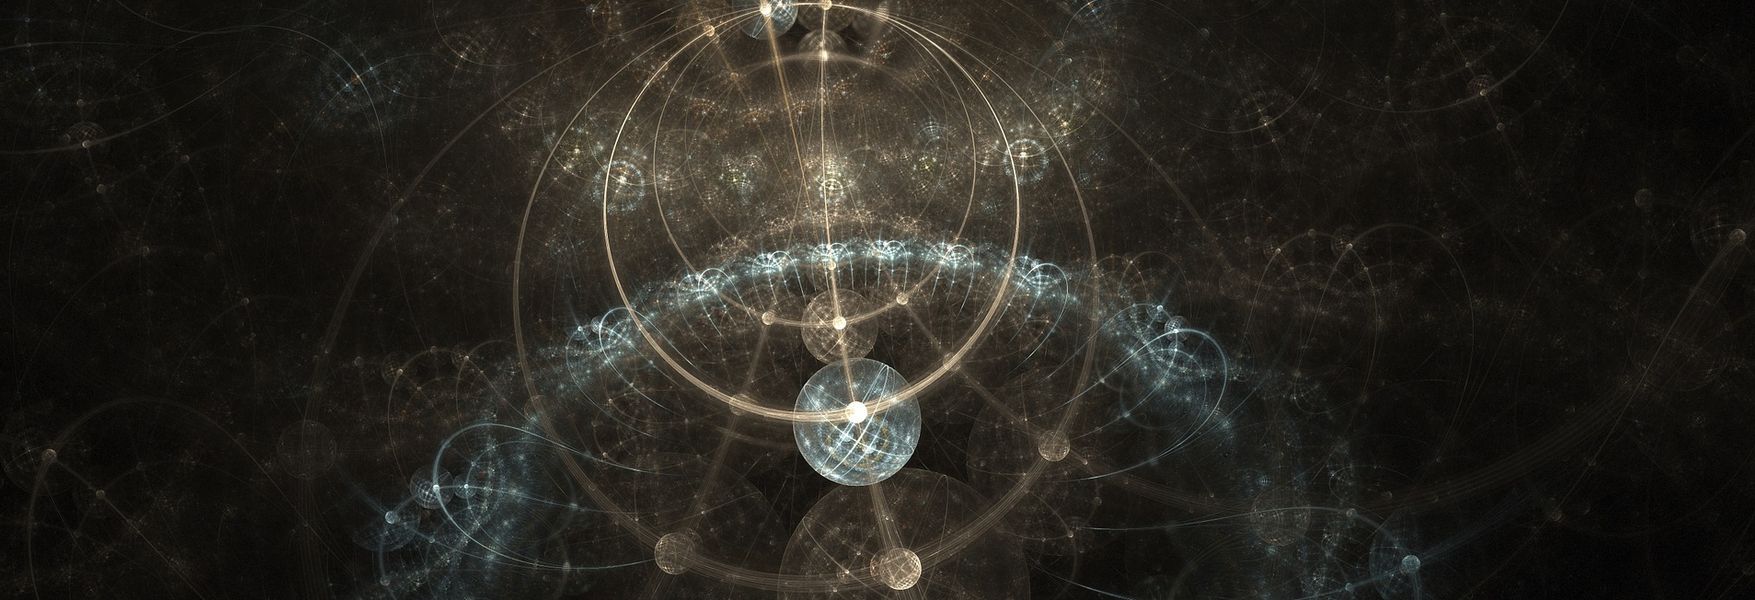 Max Planck, el Mesías de la física cuántica | OpenMind